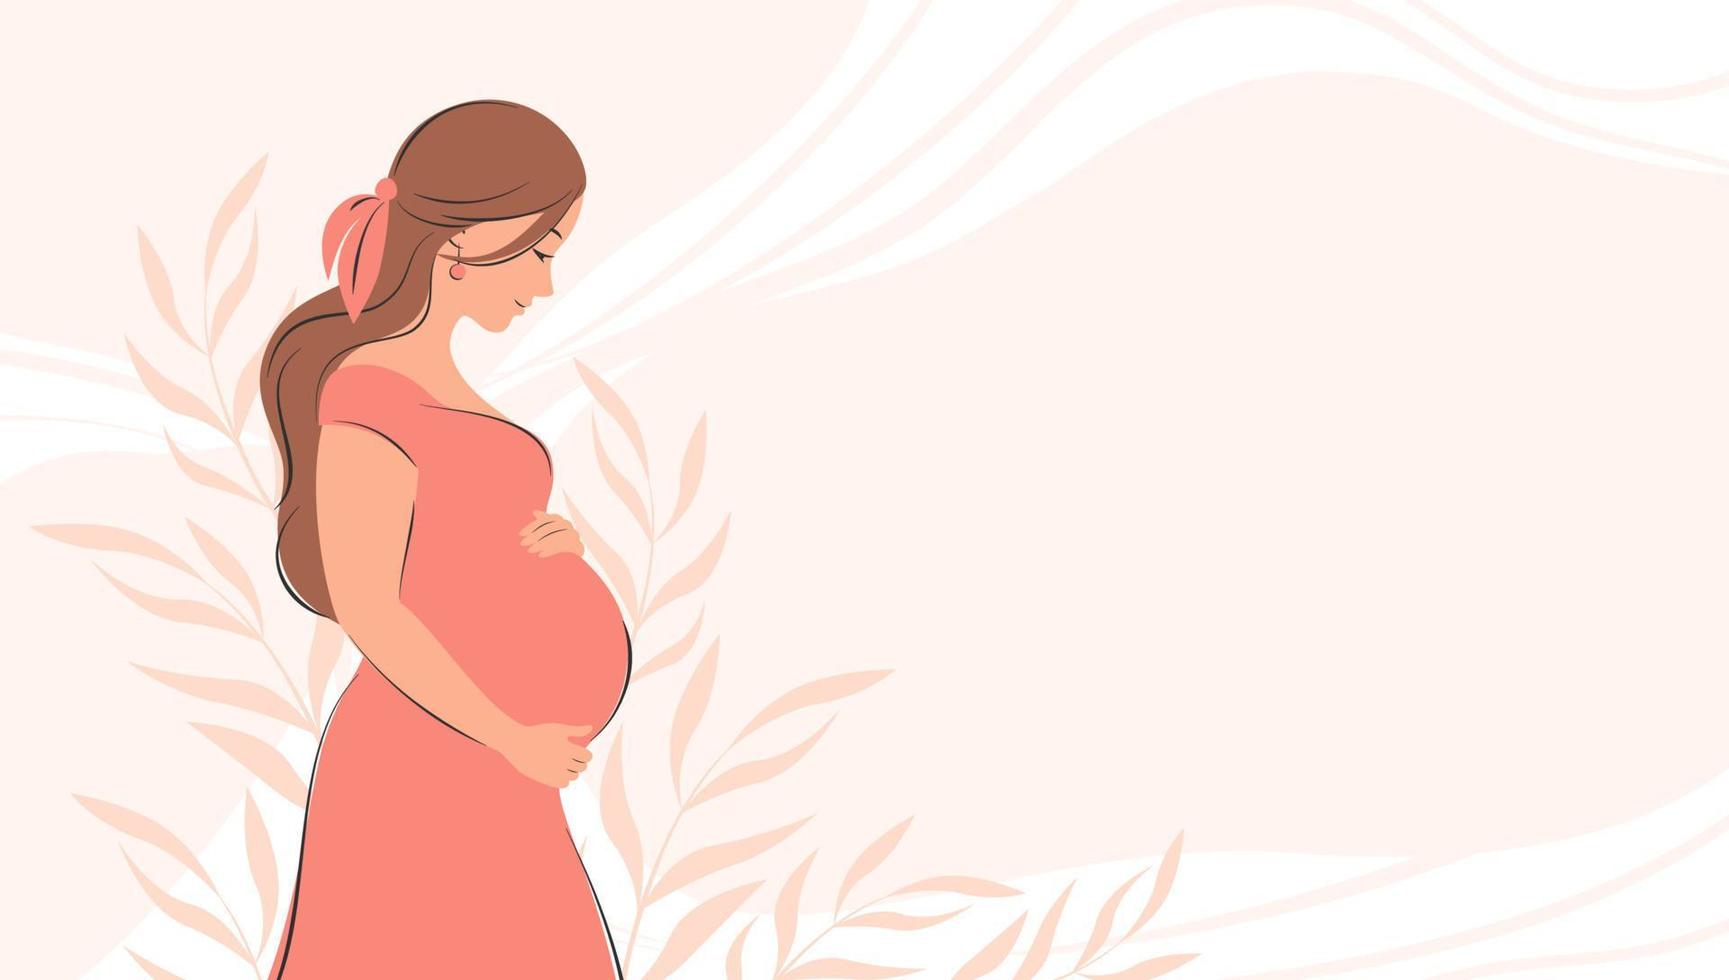 bannière sur la grossesse et la maternité avec place pour le texte. femme enceinte, future maman d'étreindre le ventre avec les bras. Bonne fête des mères. illustration vectorielle plane. vecteur